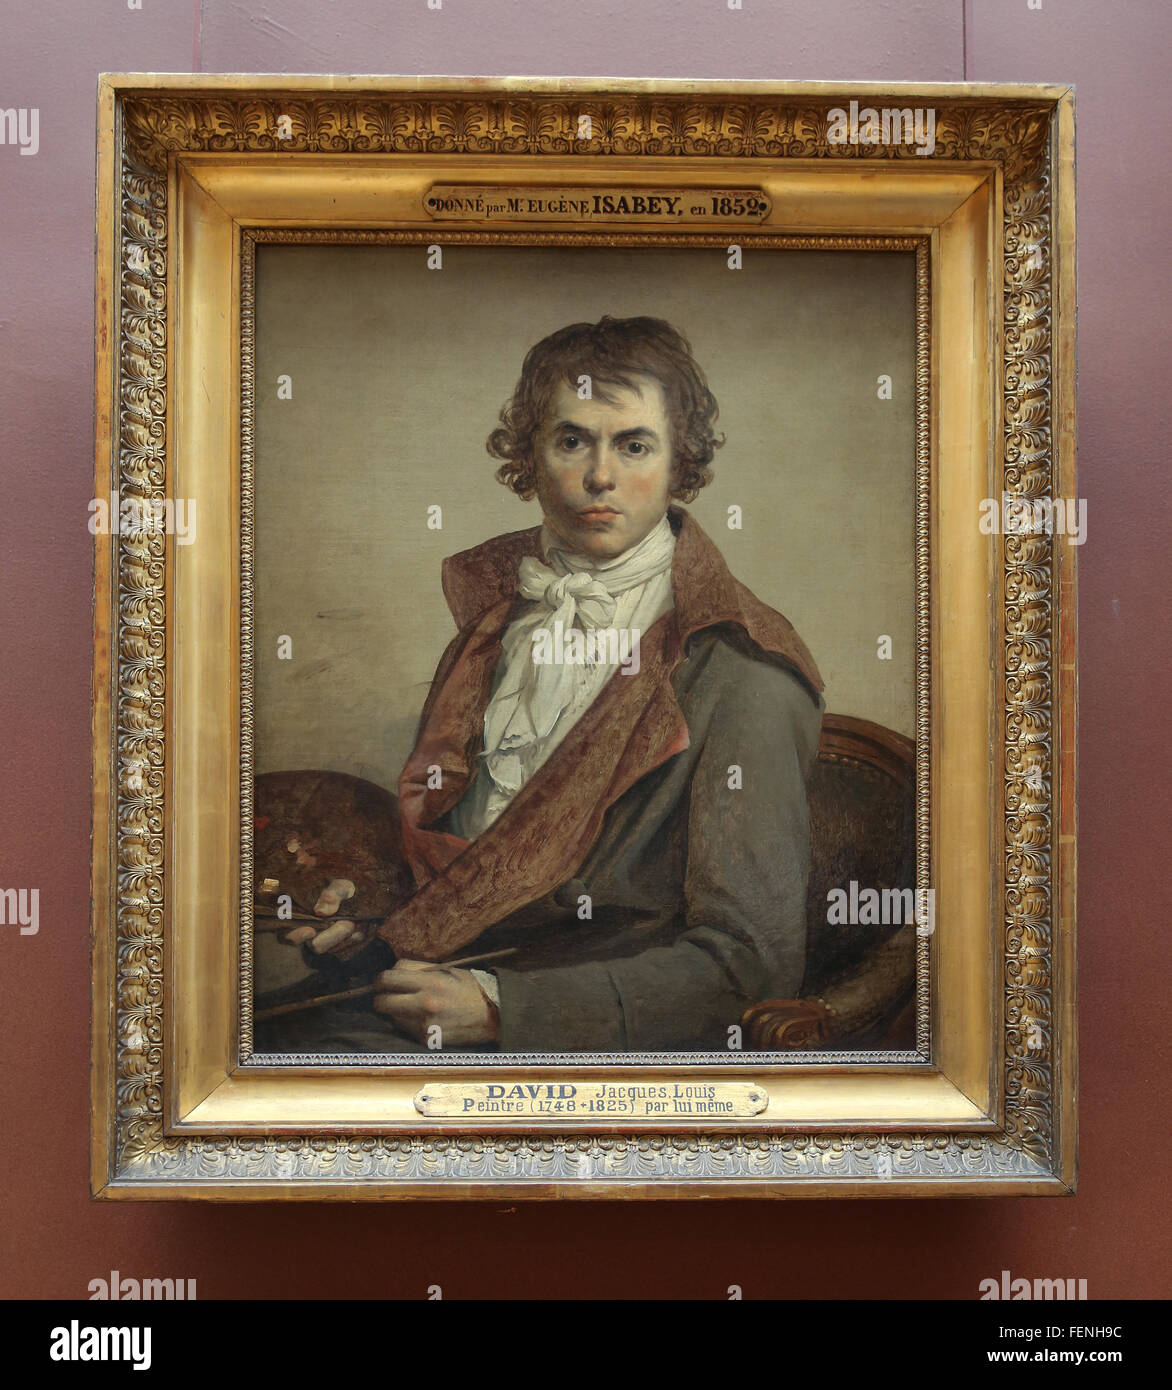 Jacques-Louis David (1748-1825). El pintor francés. De estilo neoclásico. El autorretrato. 1794. El Museo del Louvre. Francia. París. Foto de stock